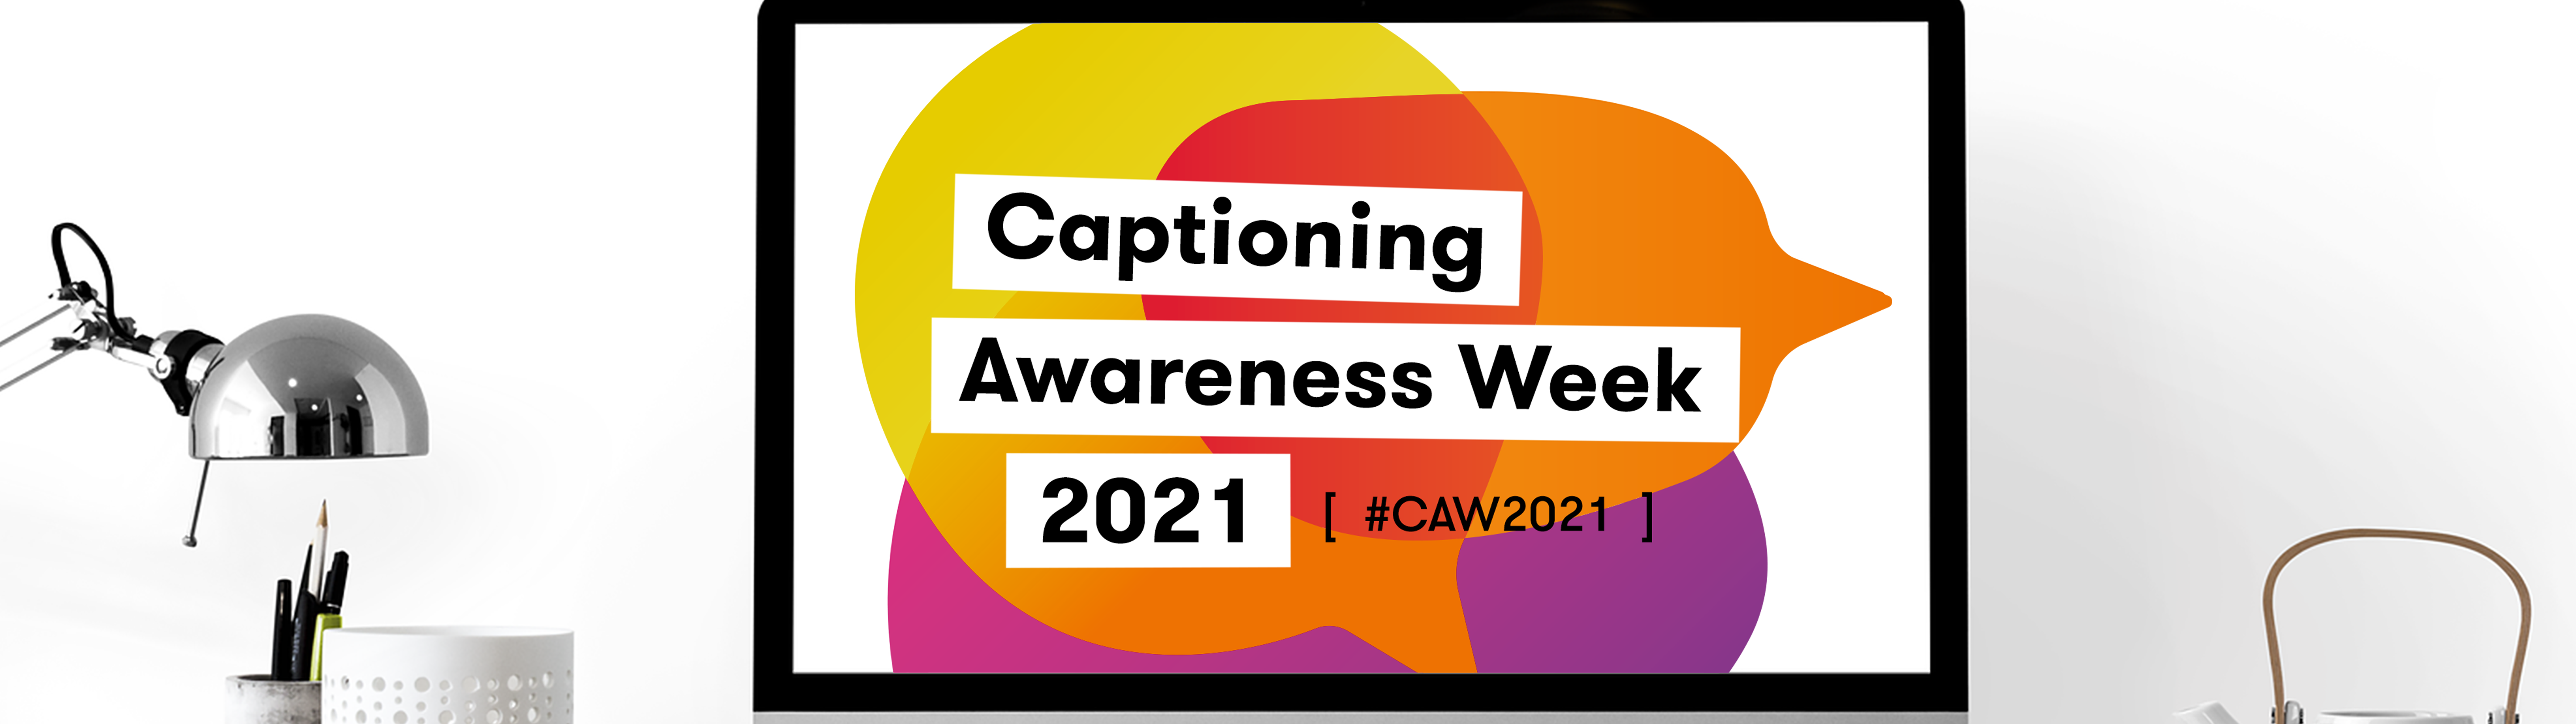 Captioning Awareness Week